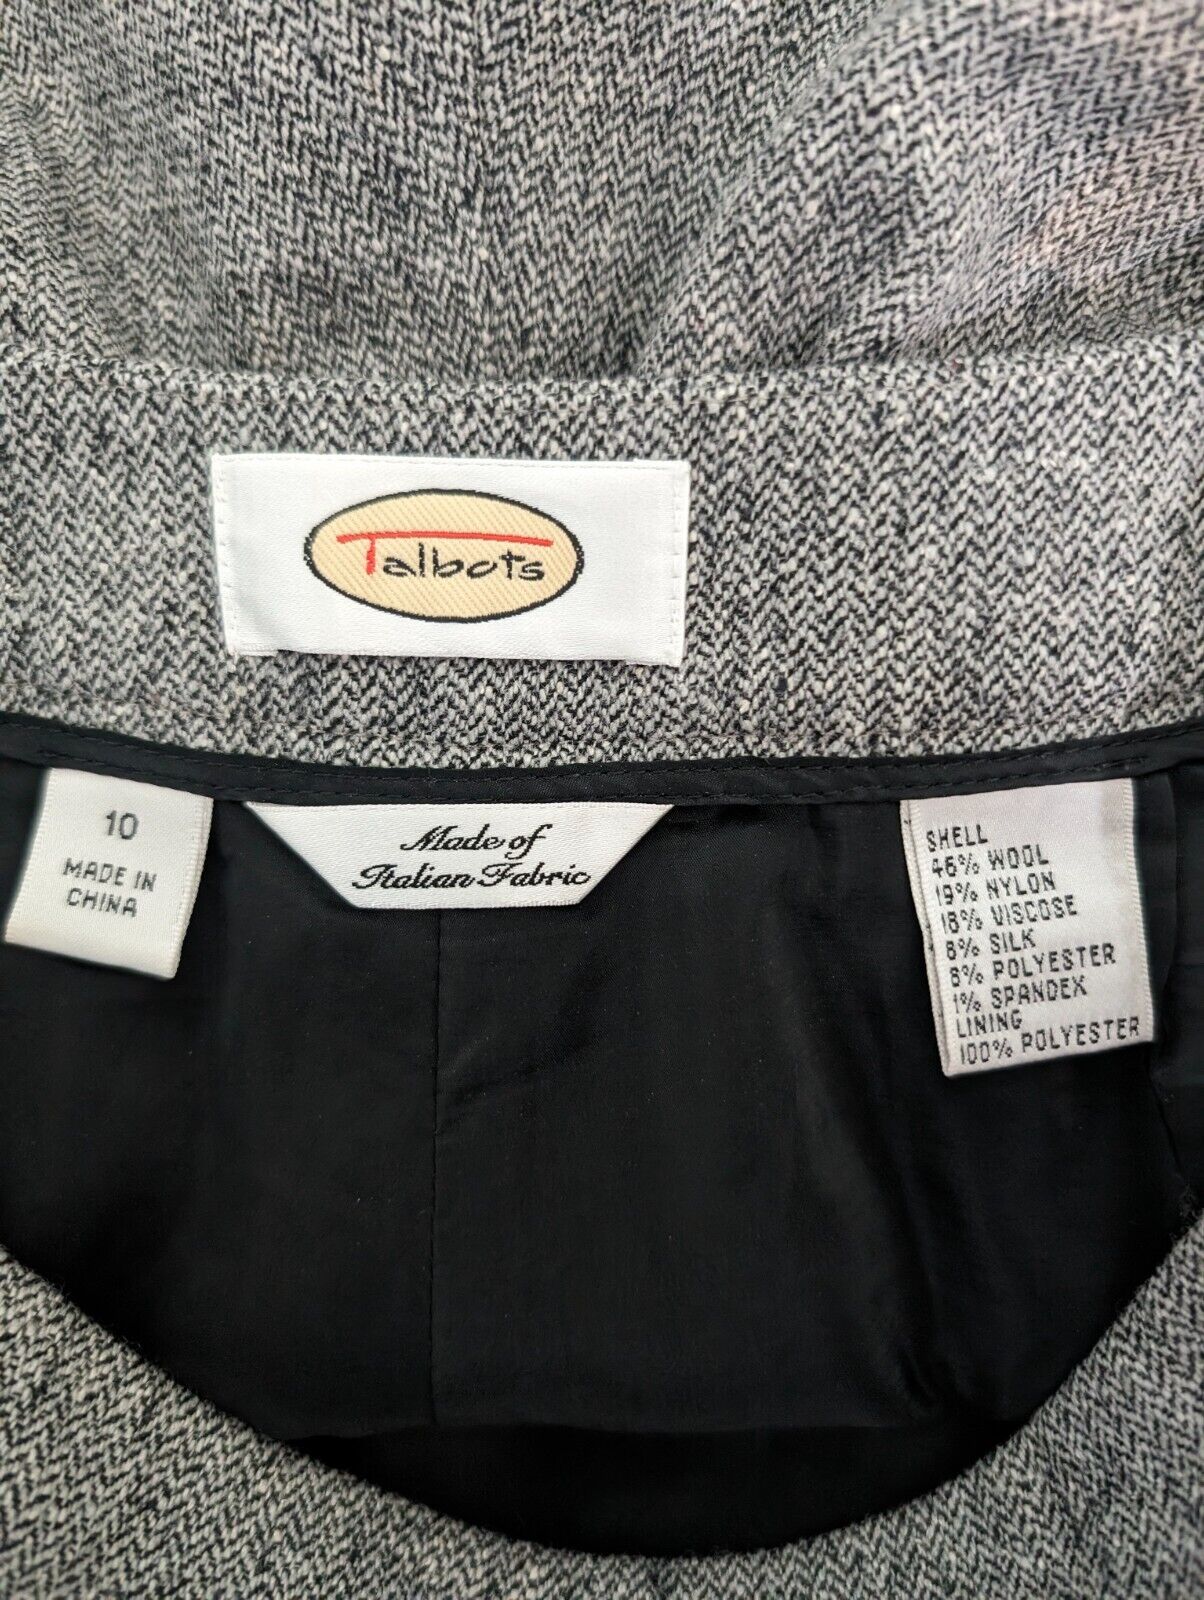 Talbots pants 10 wool blend gray herringbone wide… - image 6